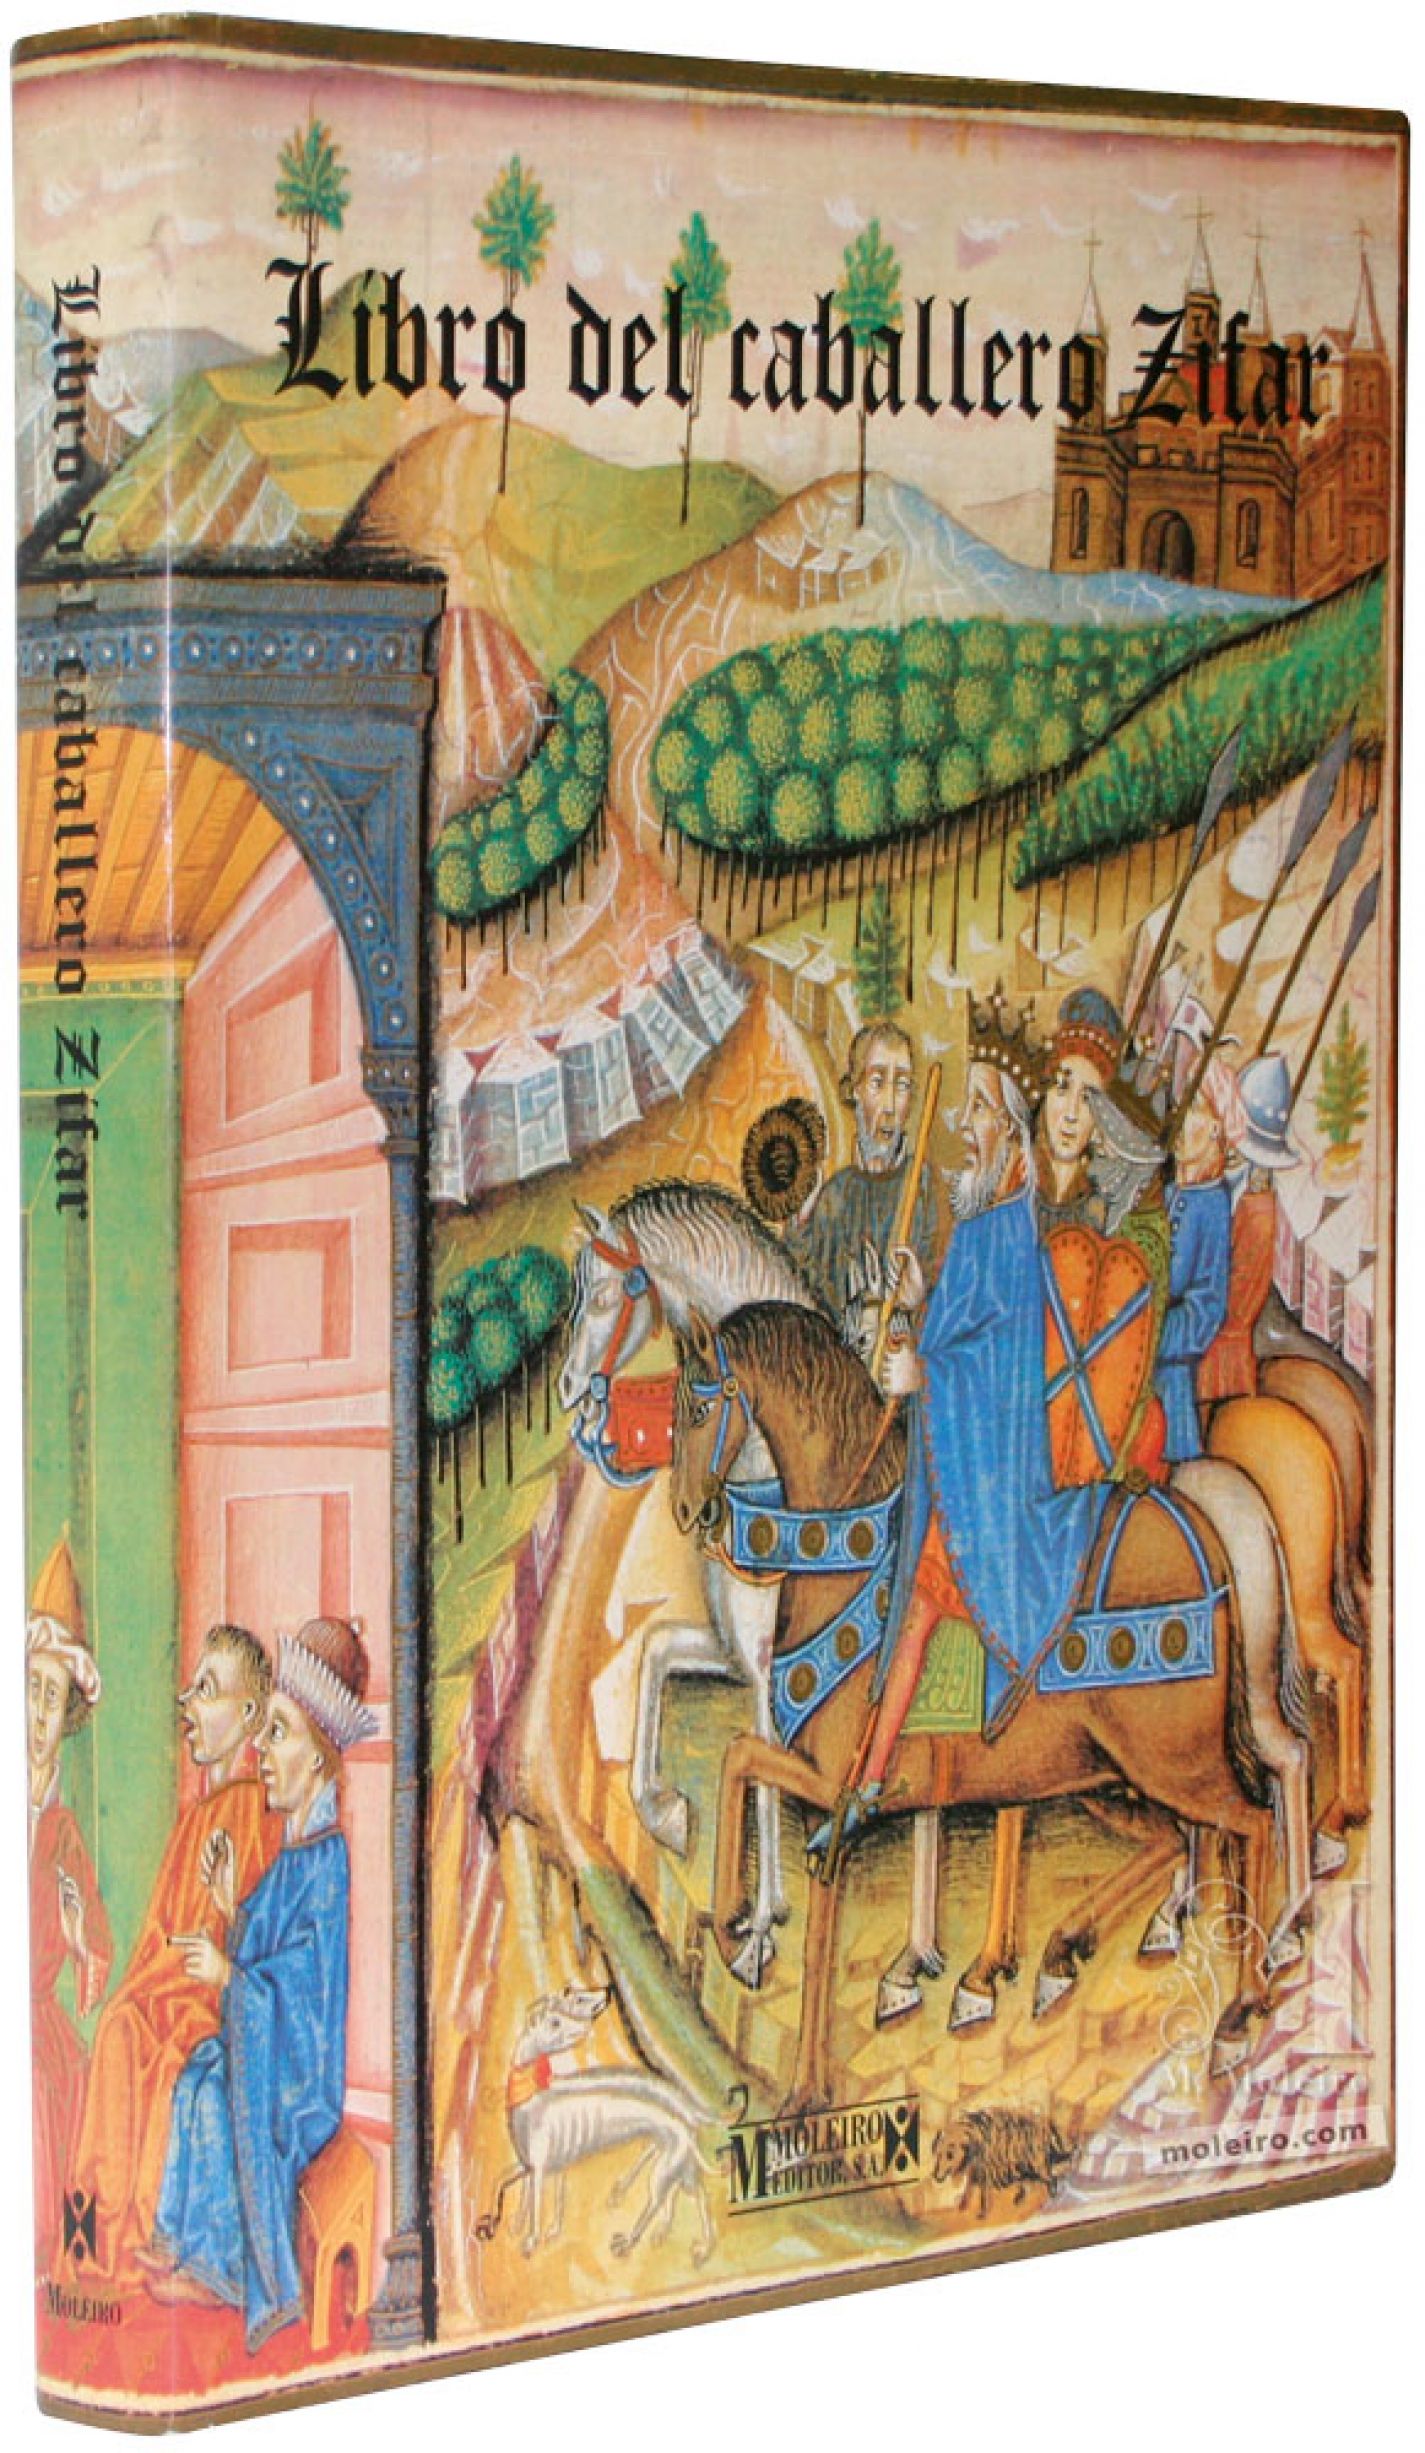 Presentación de la portada y lomo del libro de arte Libro del Caballero Zifar